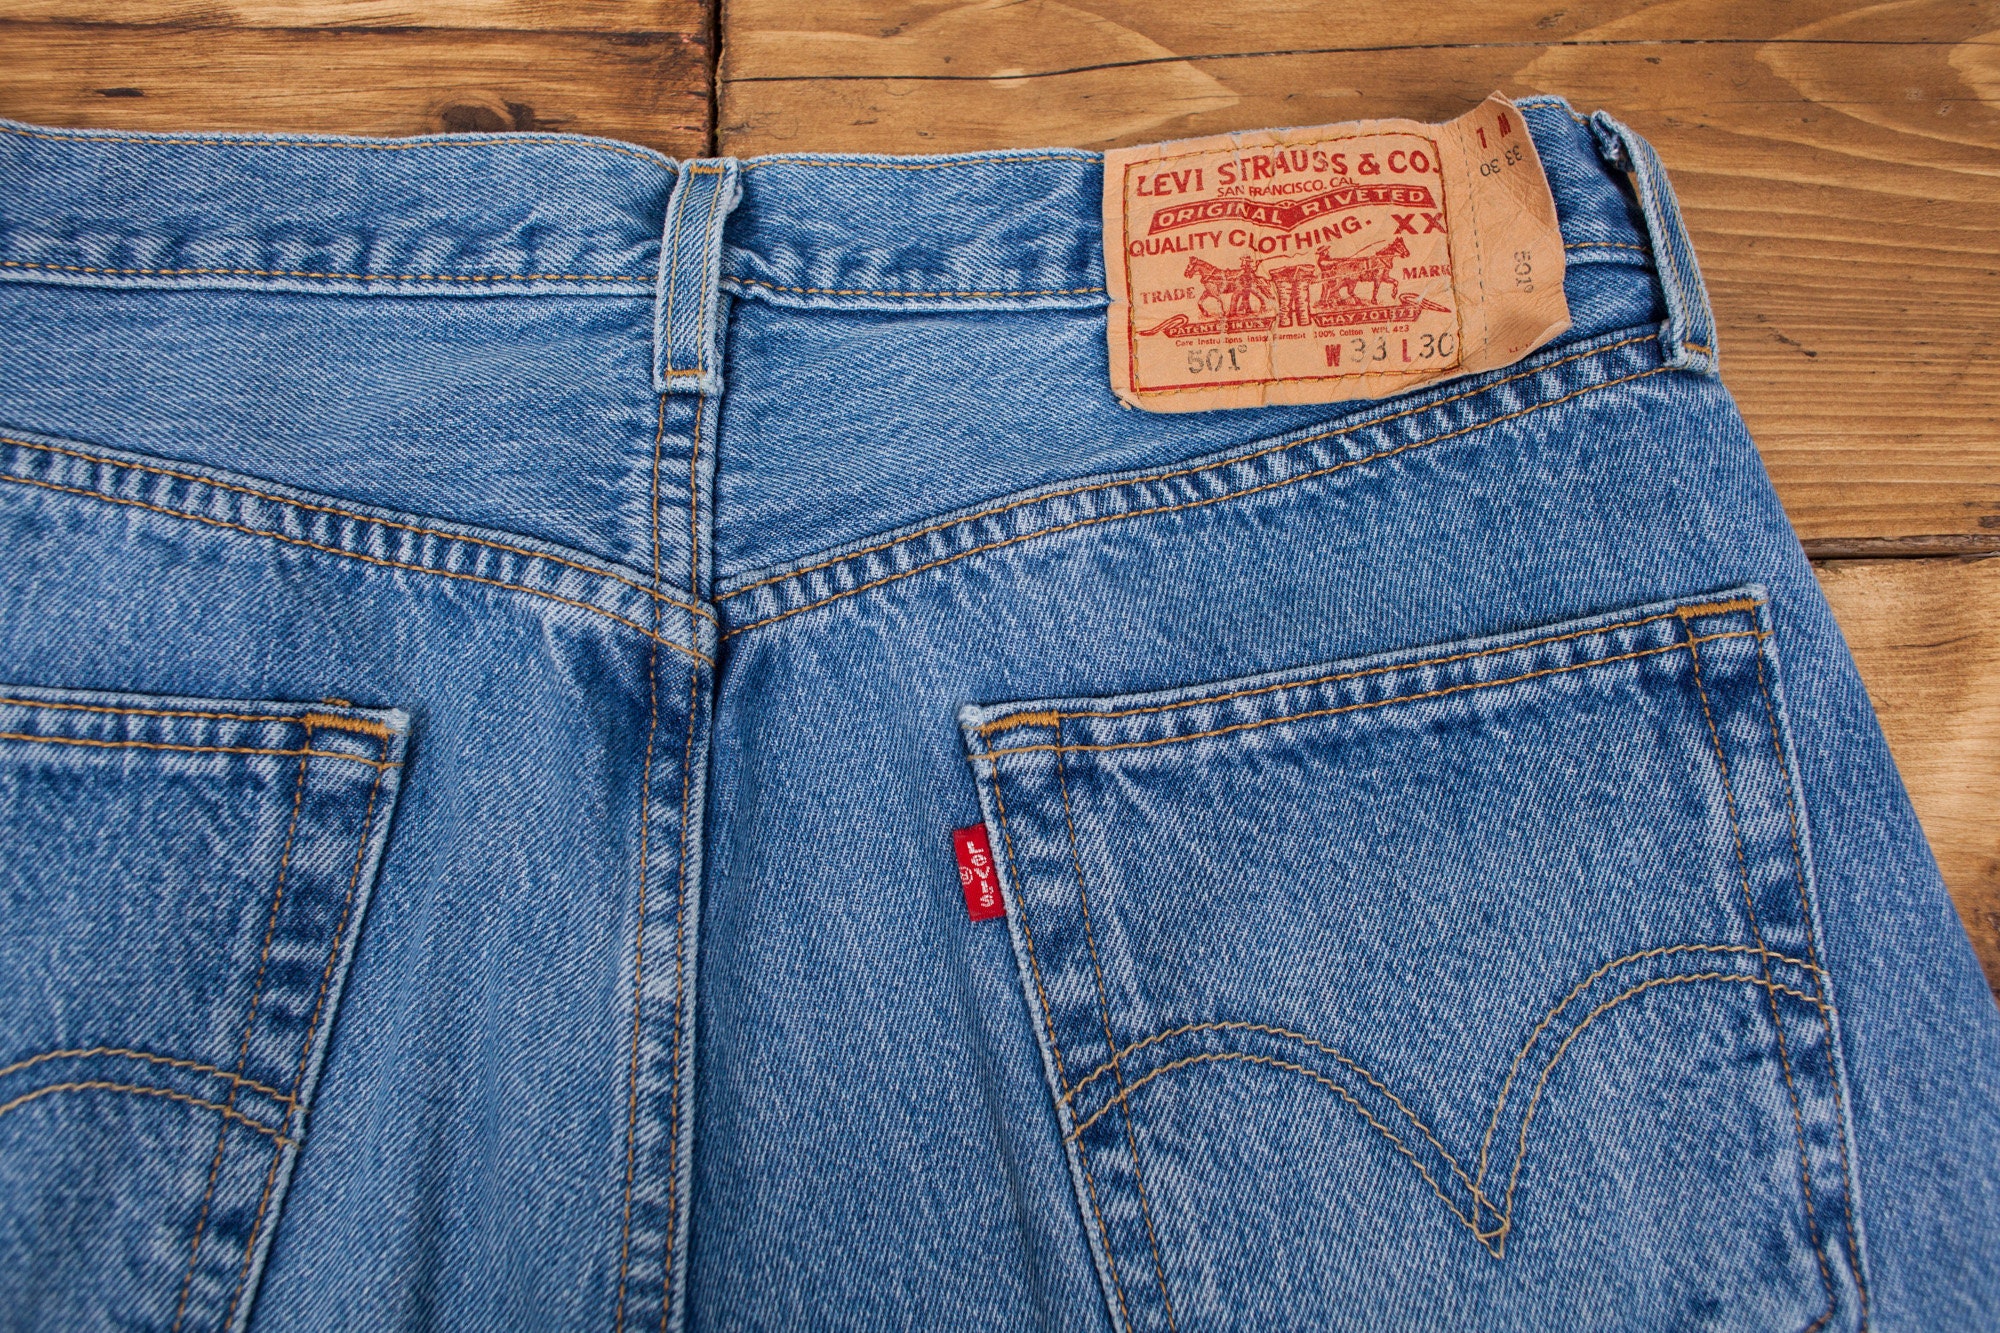 Vintage 90s Levis Levi 501 Stonewash Blue Denim Jeans 32 x 30 | Etsy